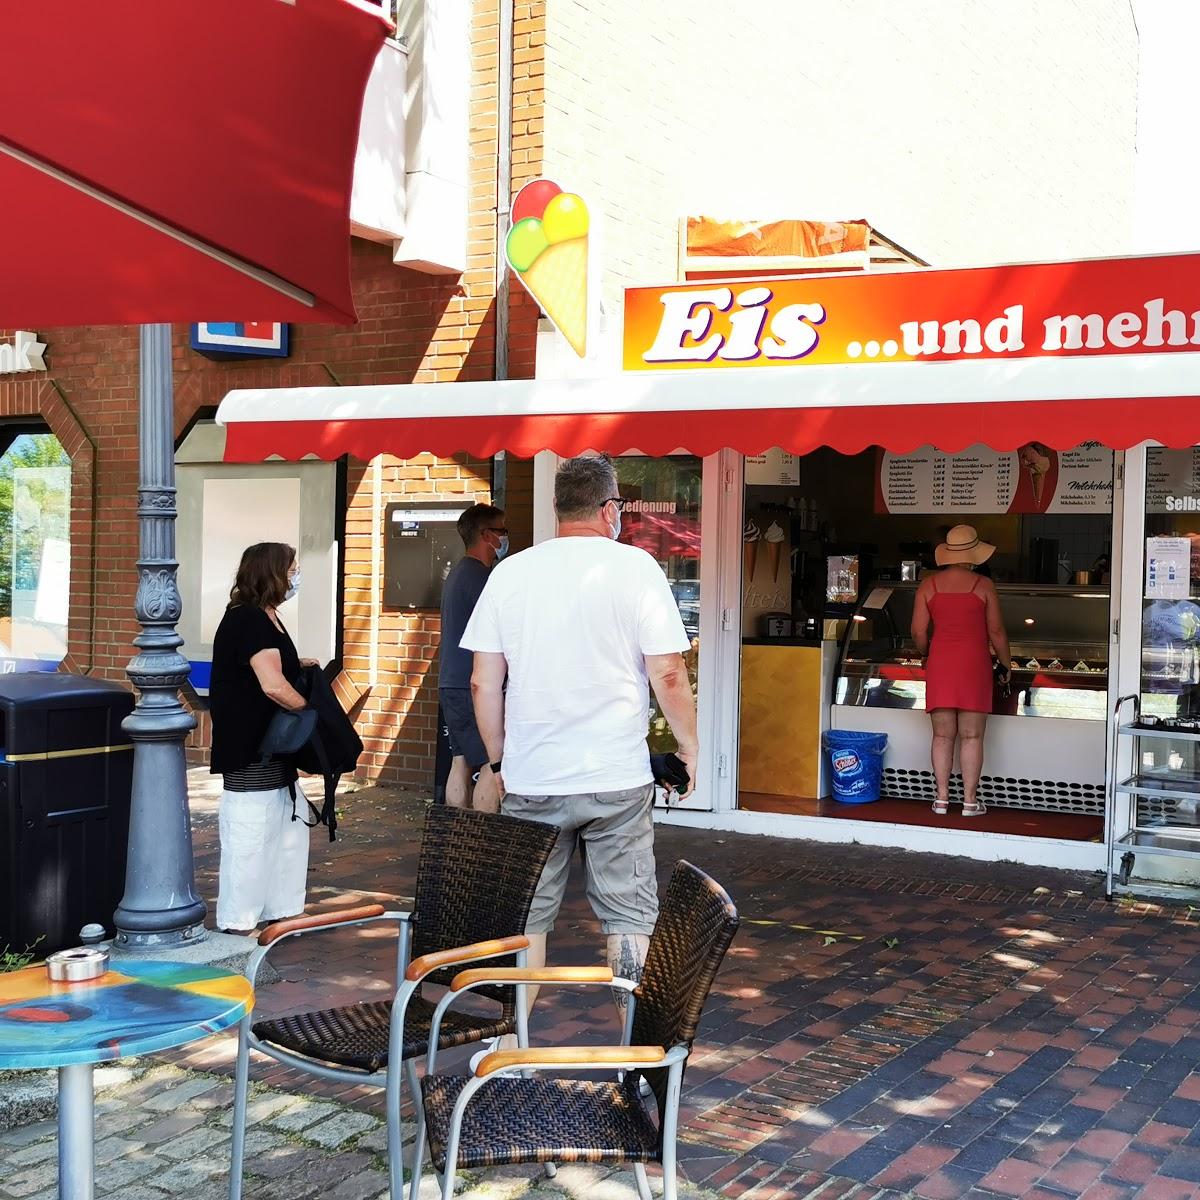 Restaurant "Eis und mehr" in Oldenburg in Holstein